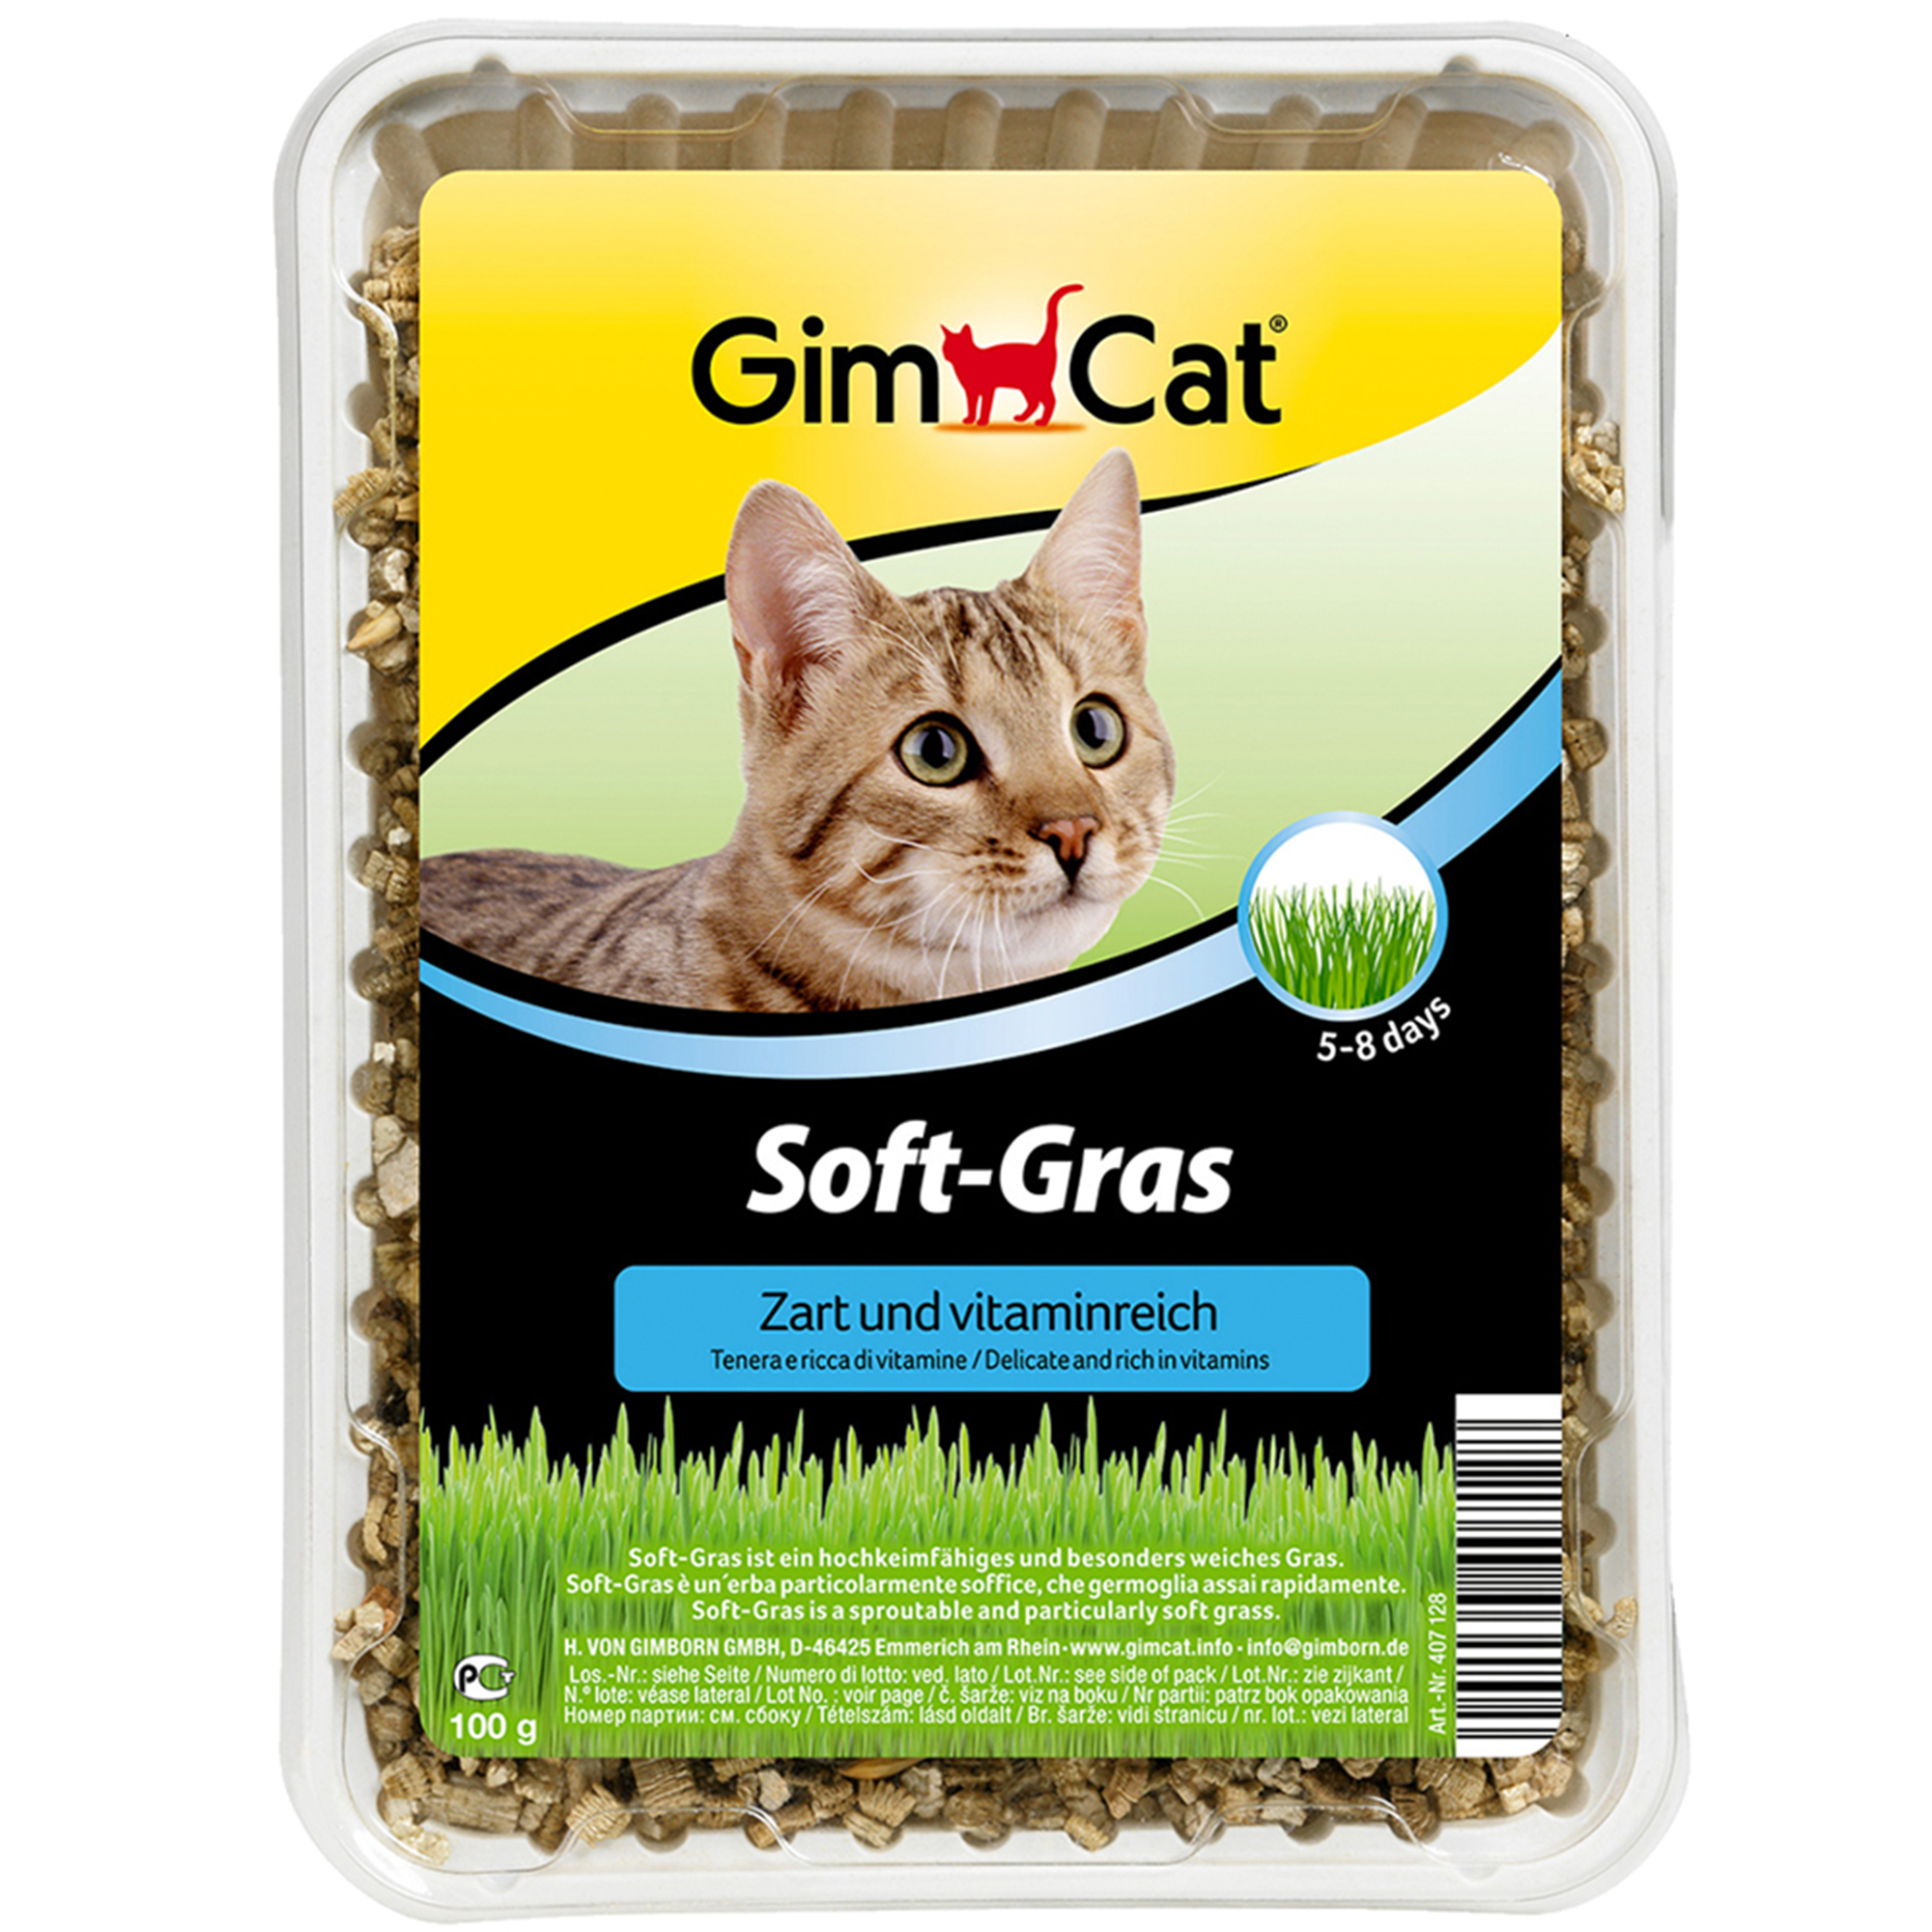 GimCat Soft-Gras 100g